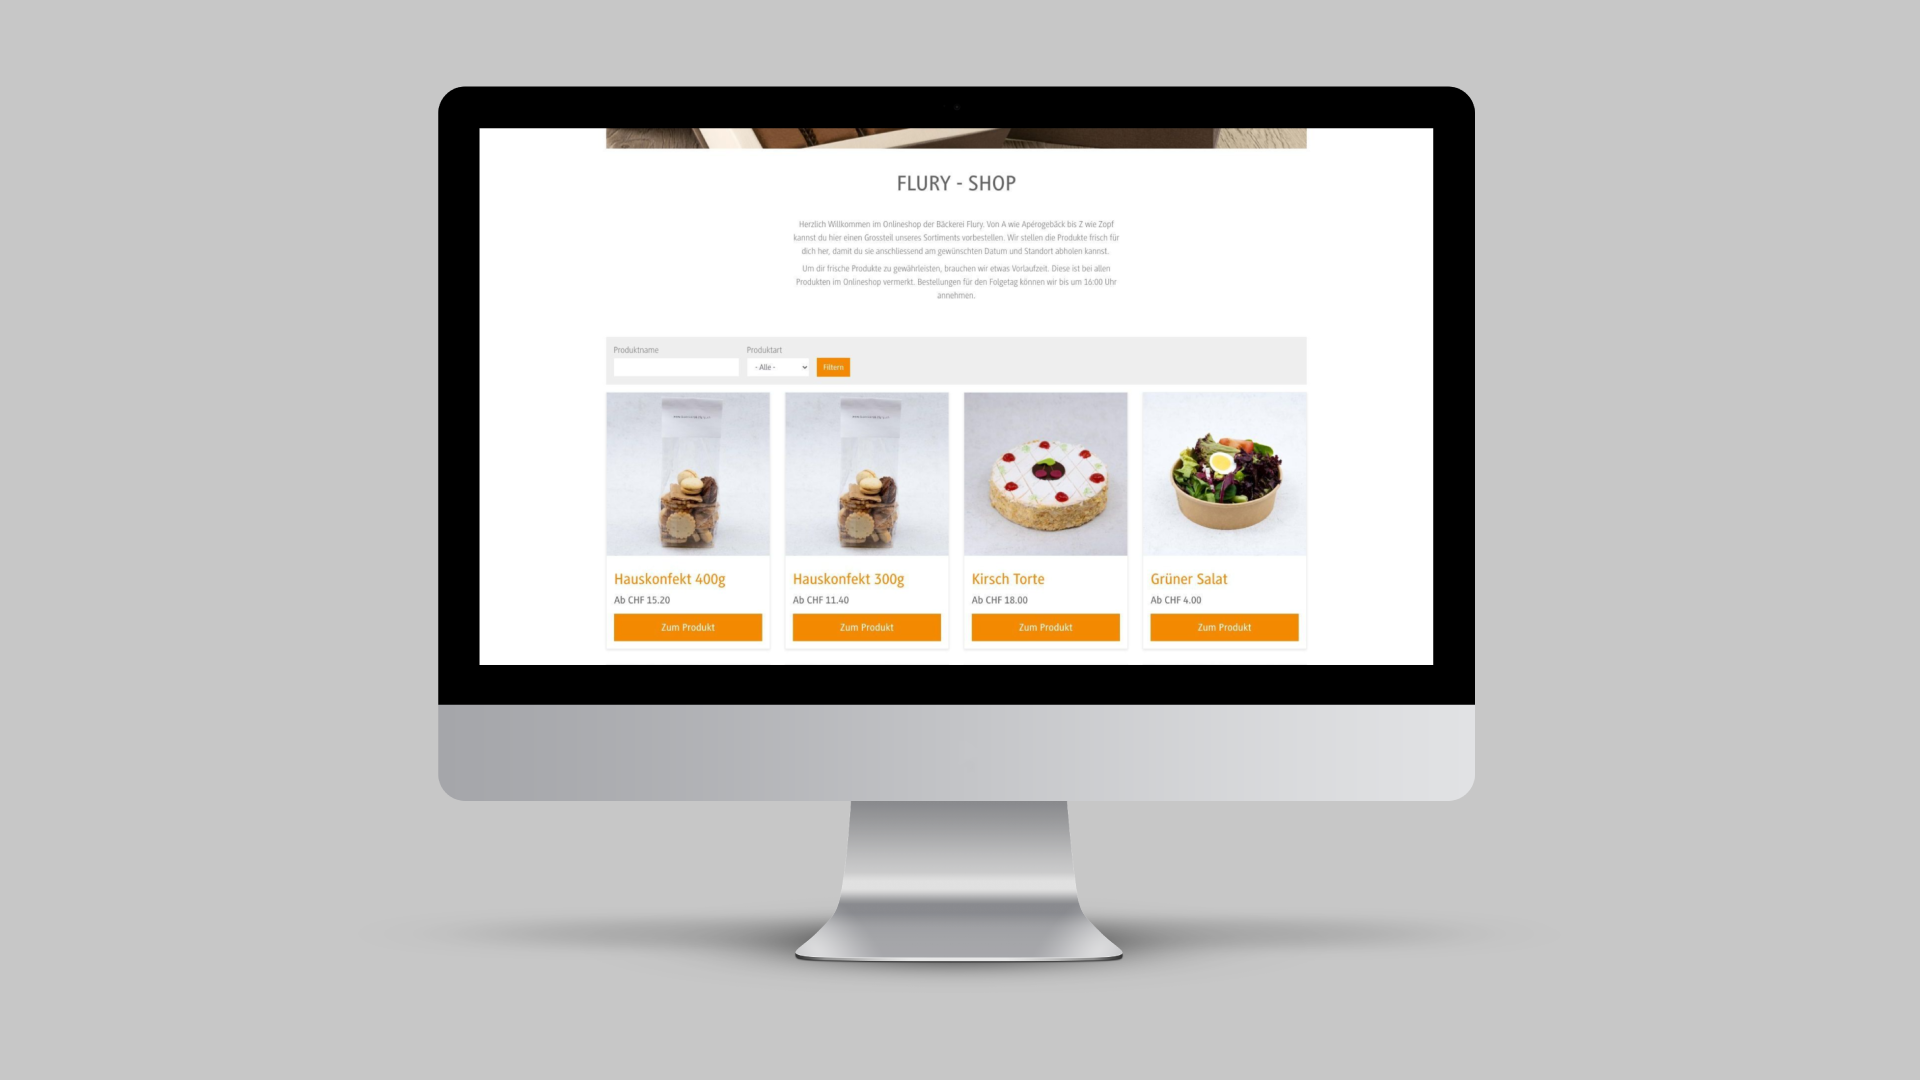 Produkteübersicht im Onlineshop der Flury Bäckerei